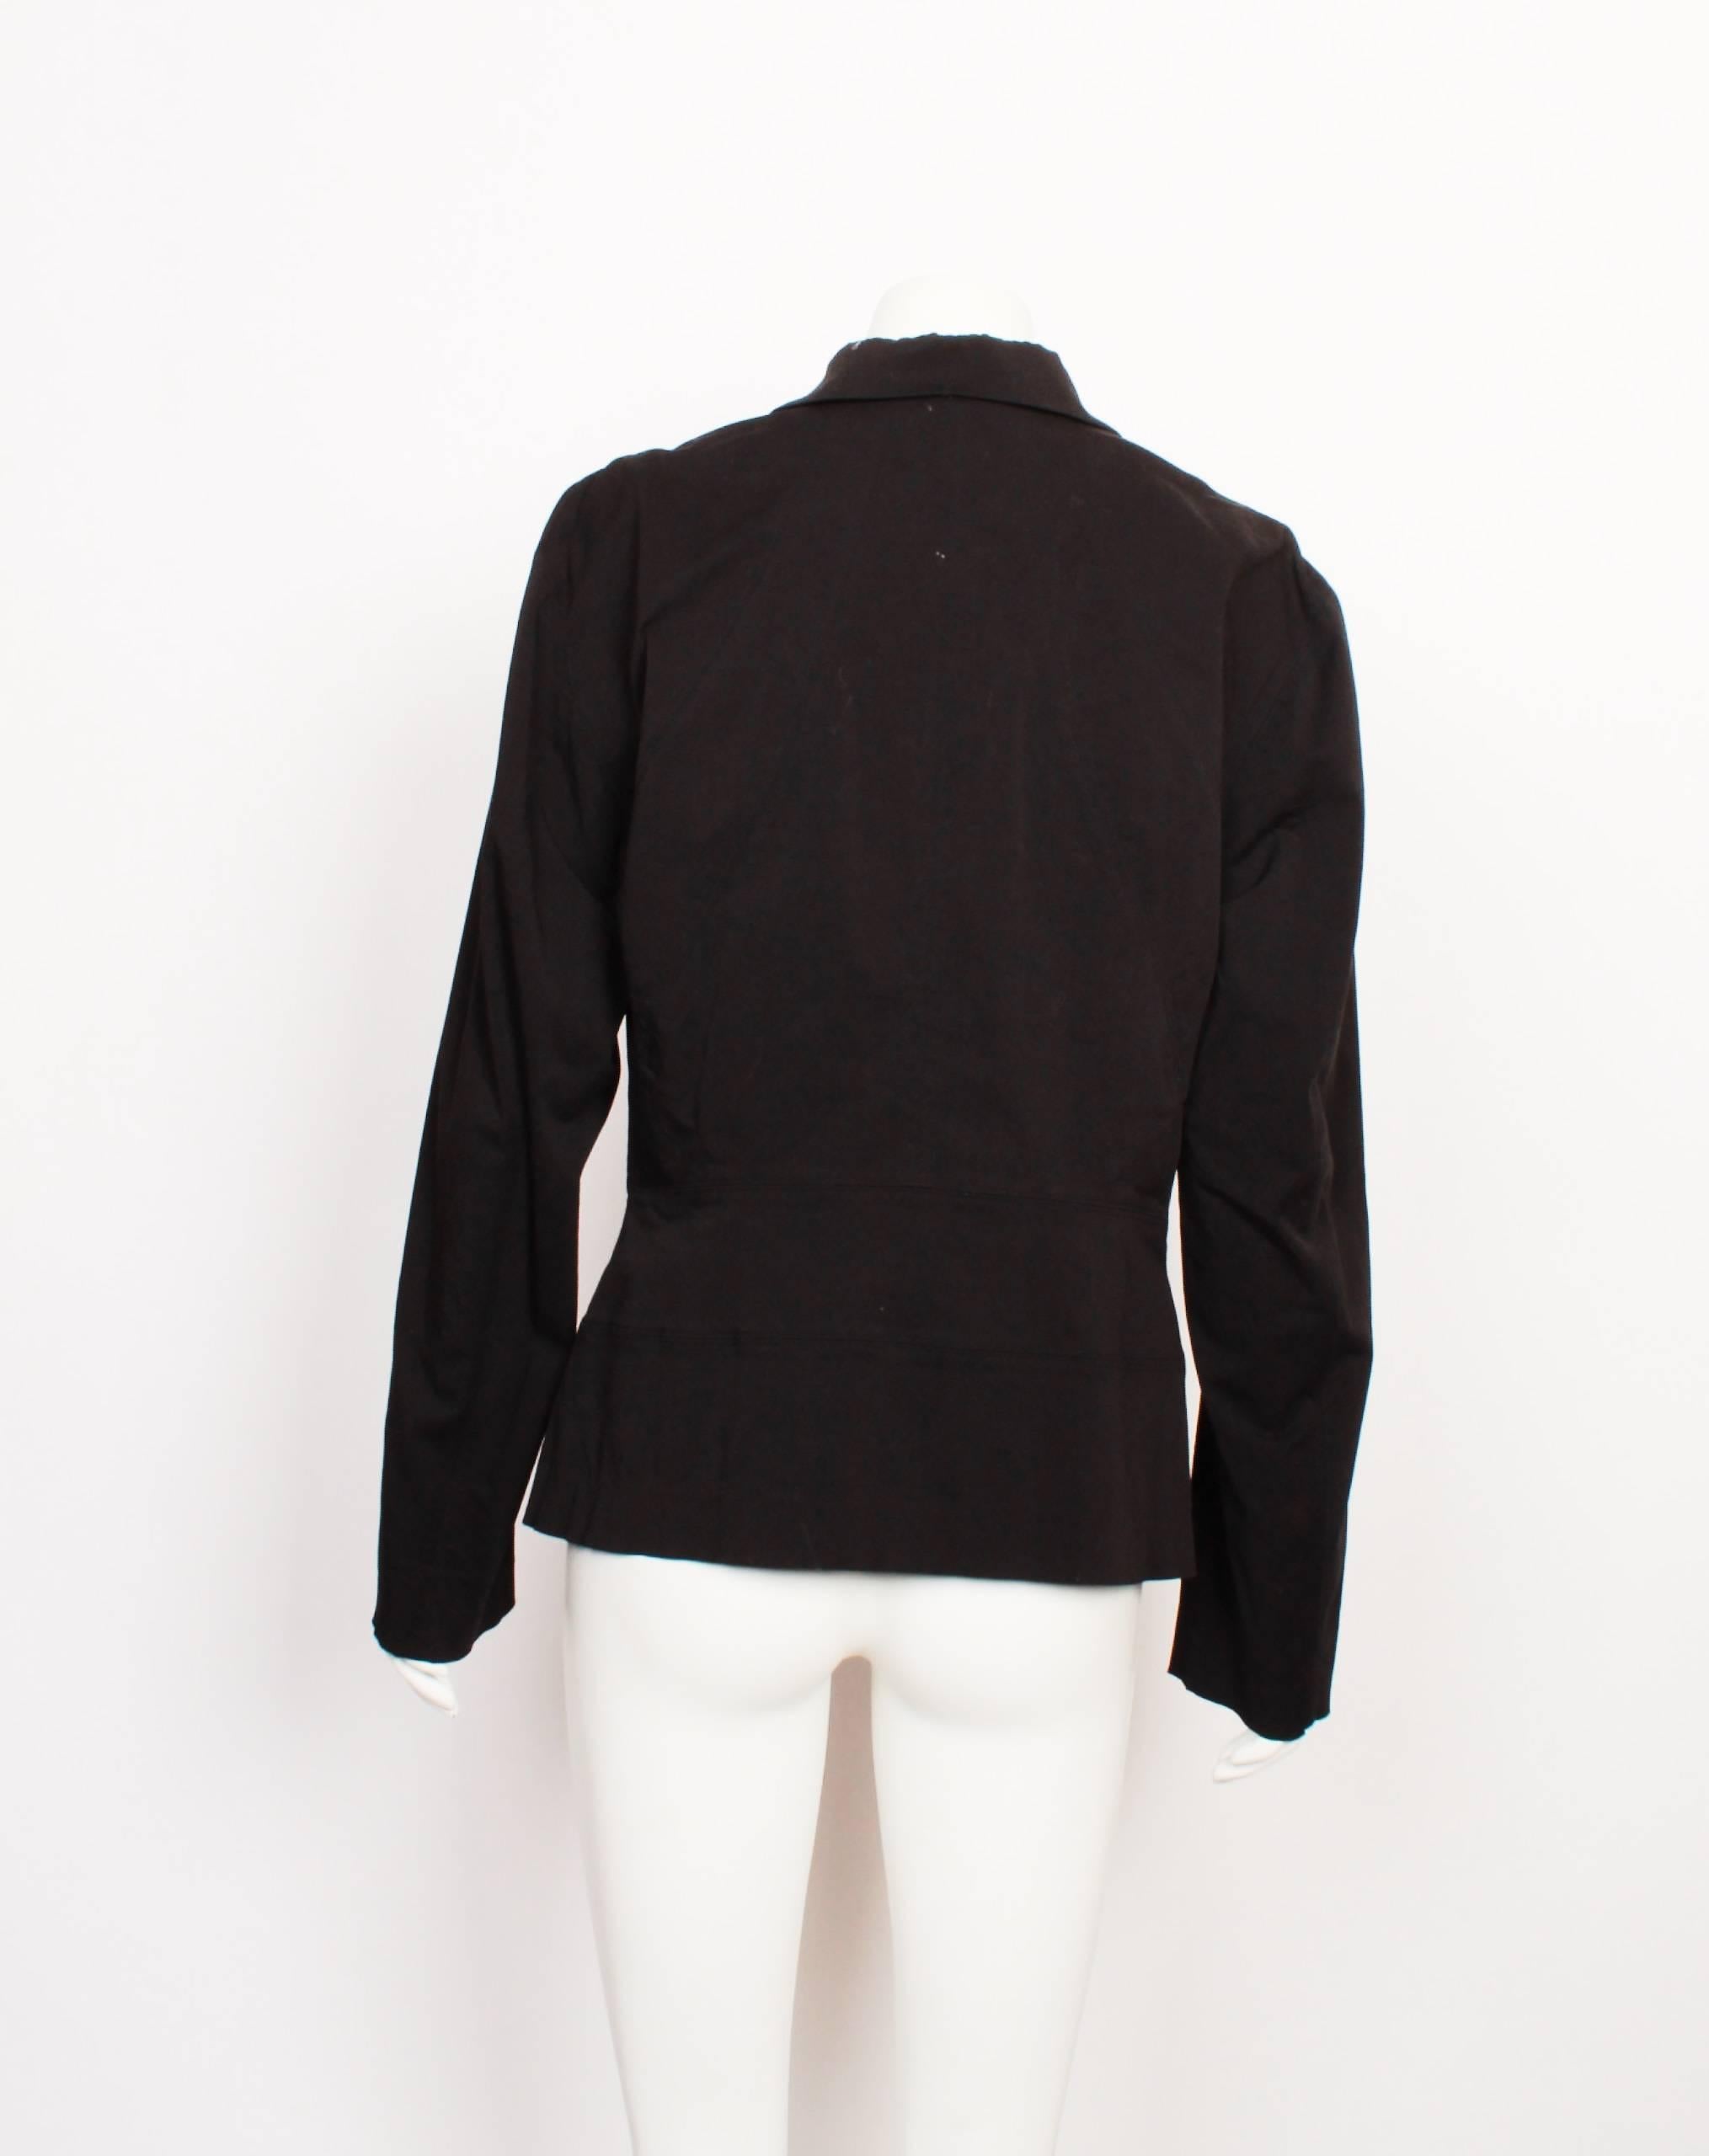 Women's or Men's Issey Miyake Black Jacket